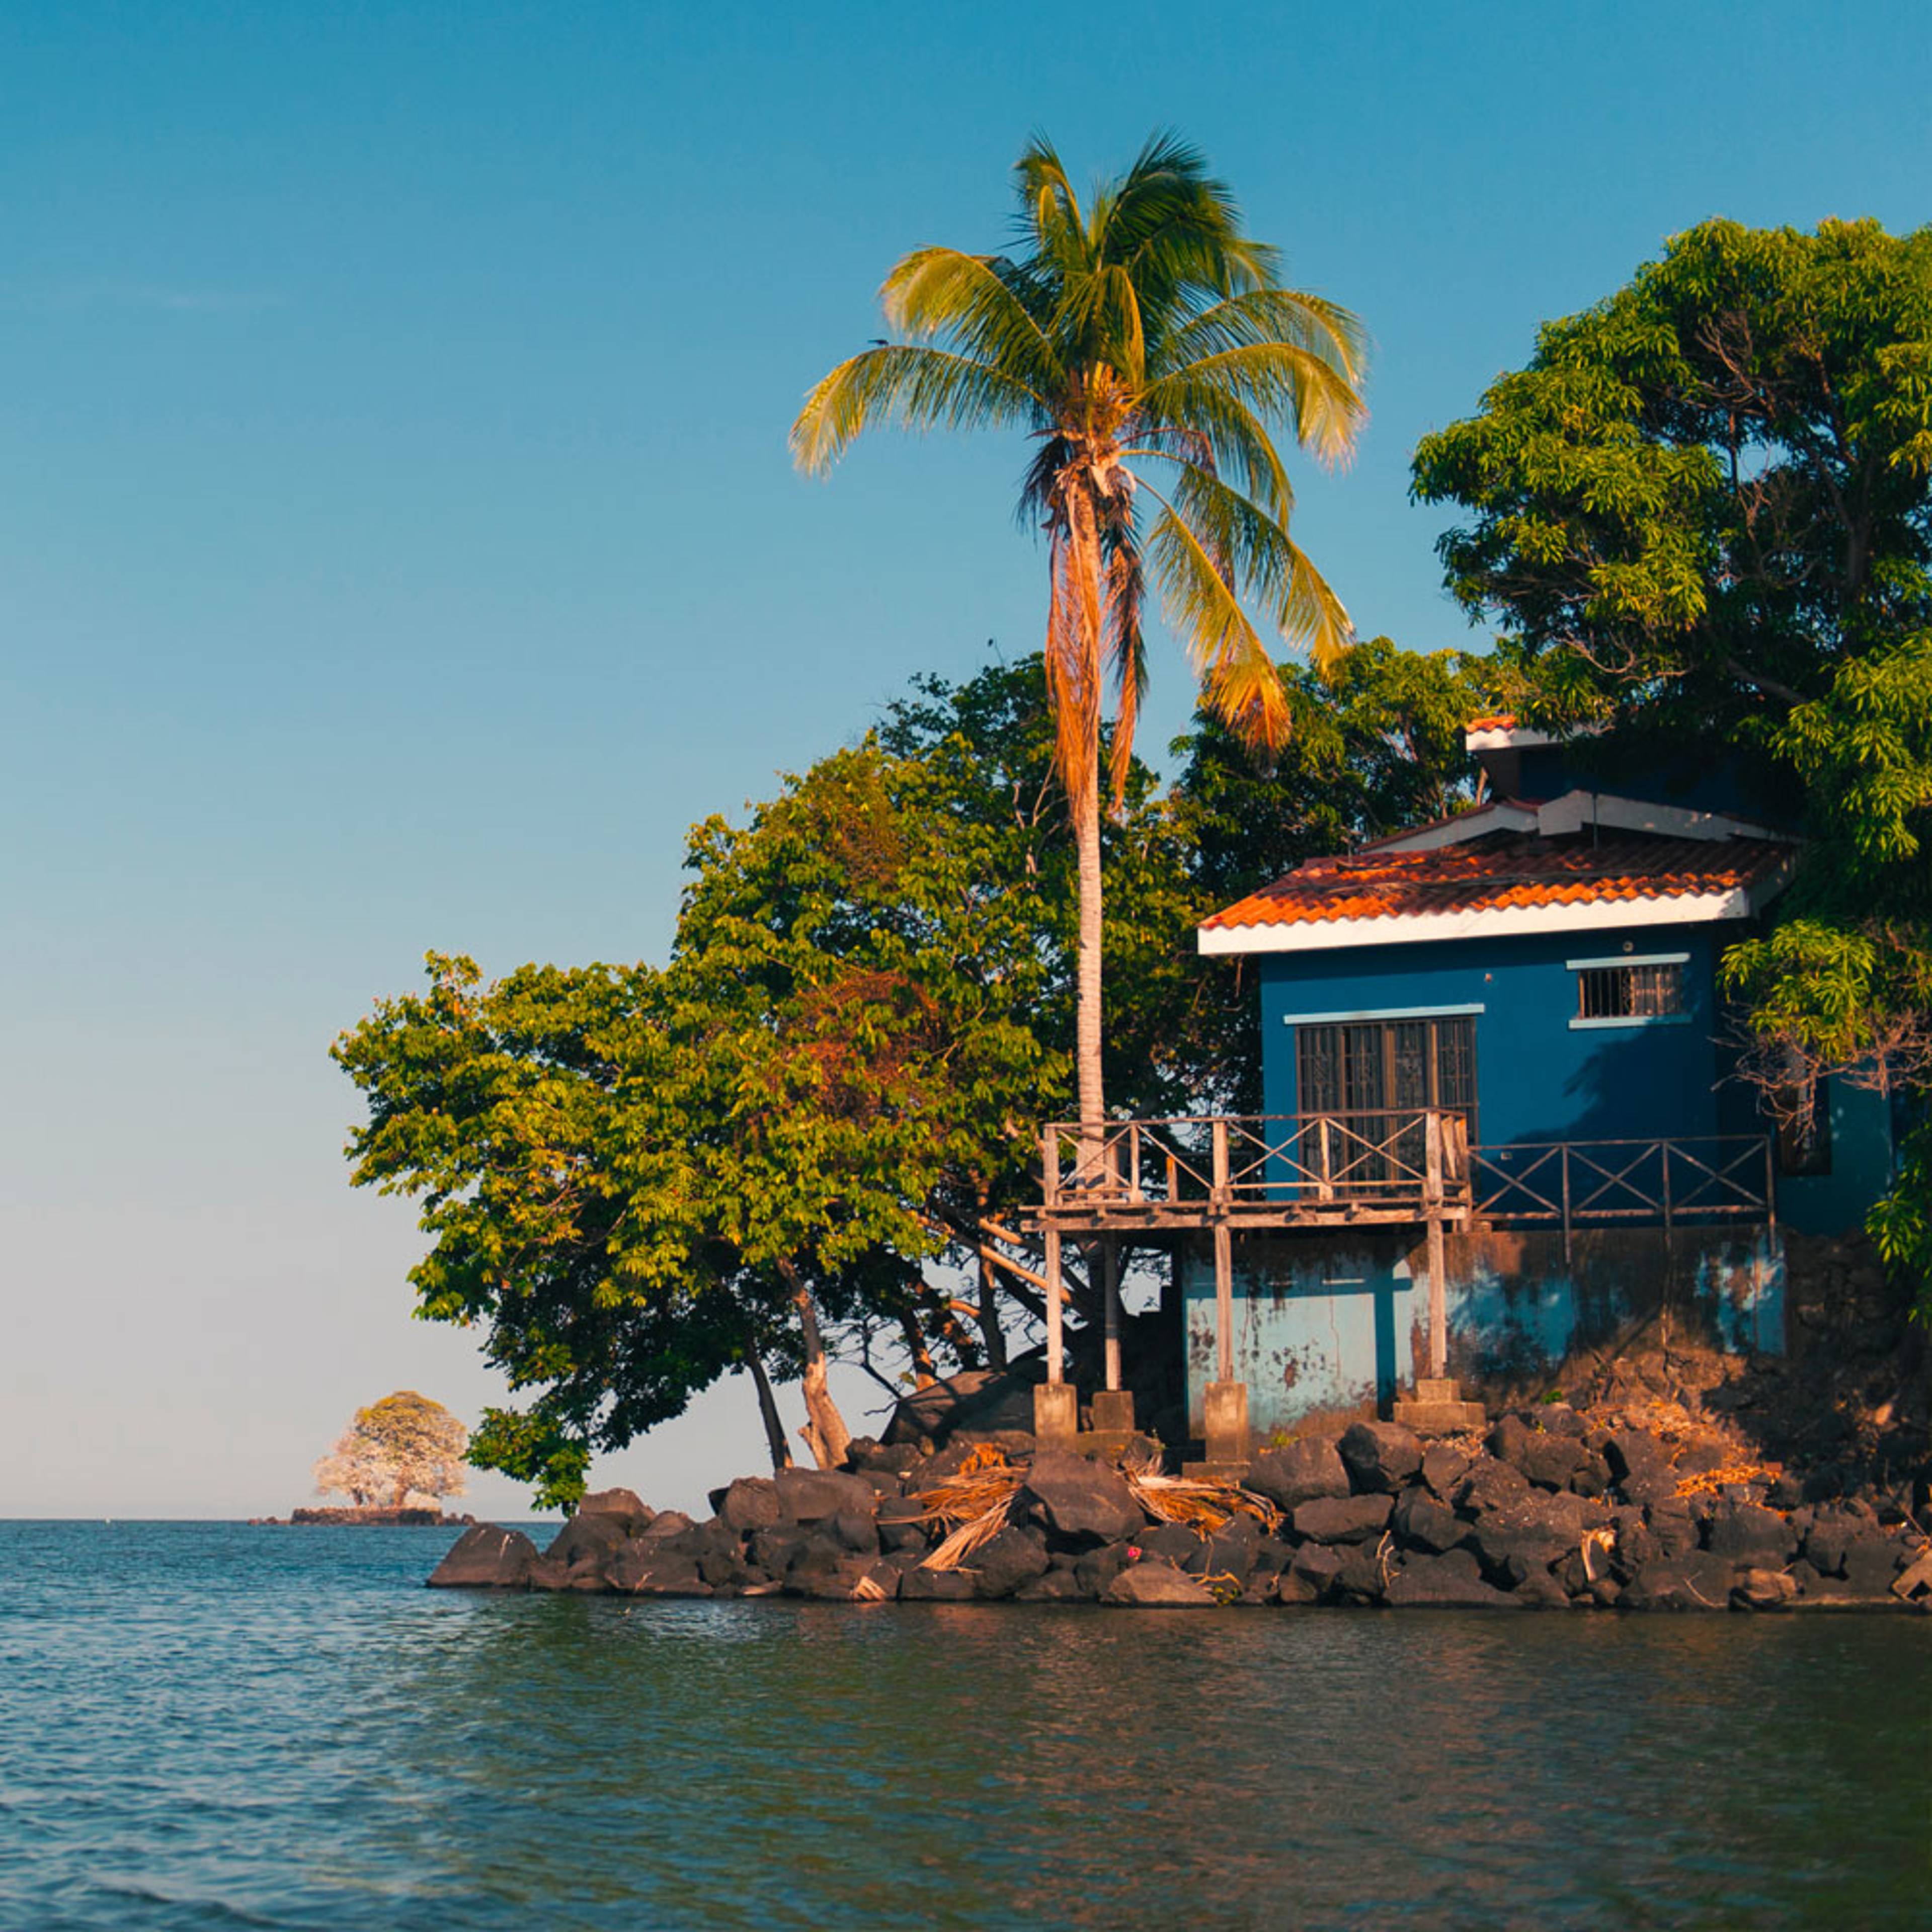 Partez à la découverte des îles du Nicaragua 100% sur mesure